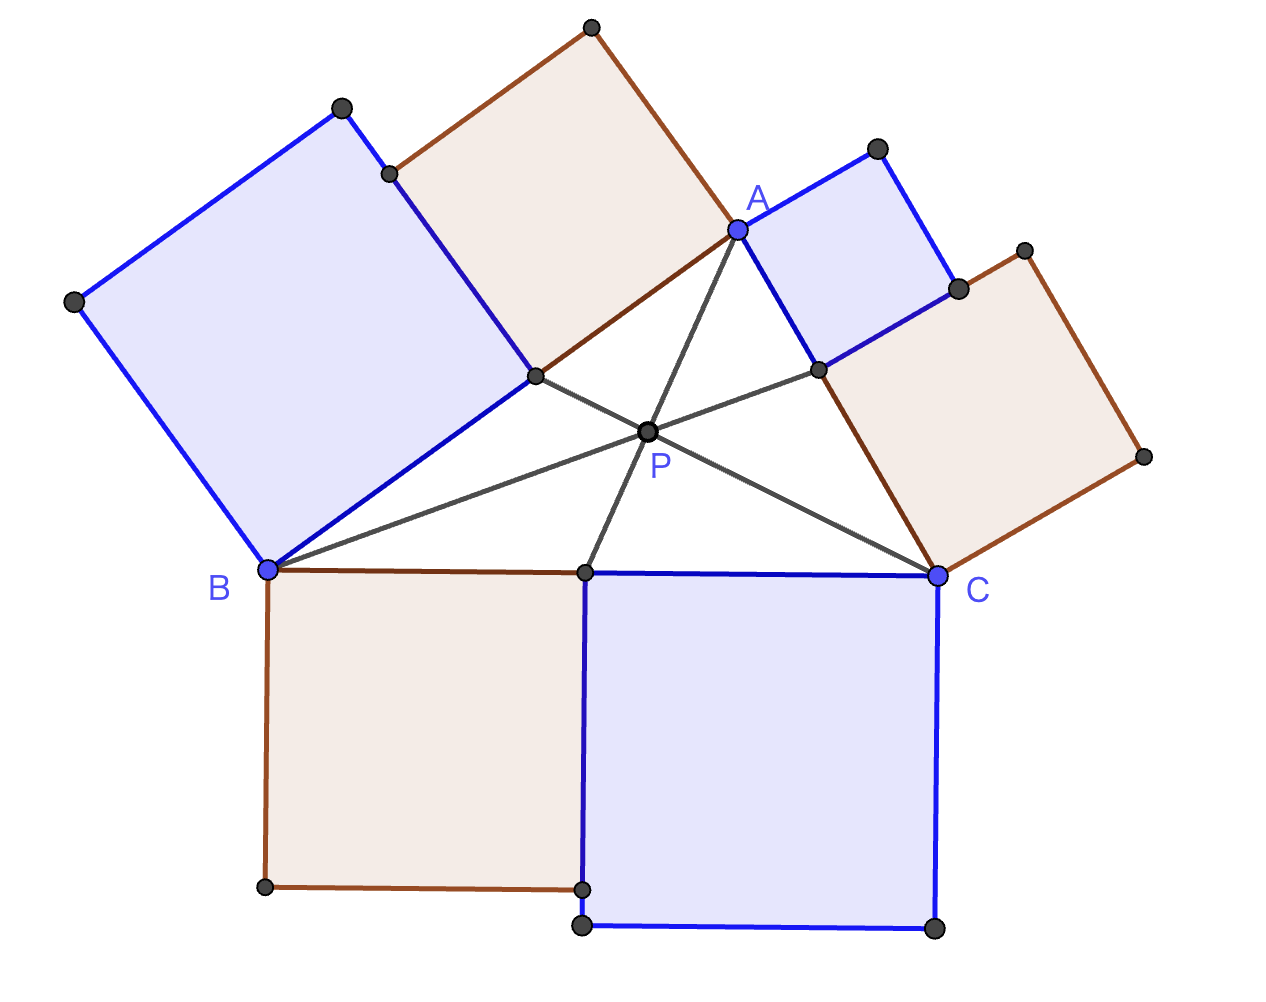 点Pは三角形の内部の点